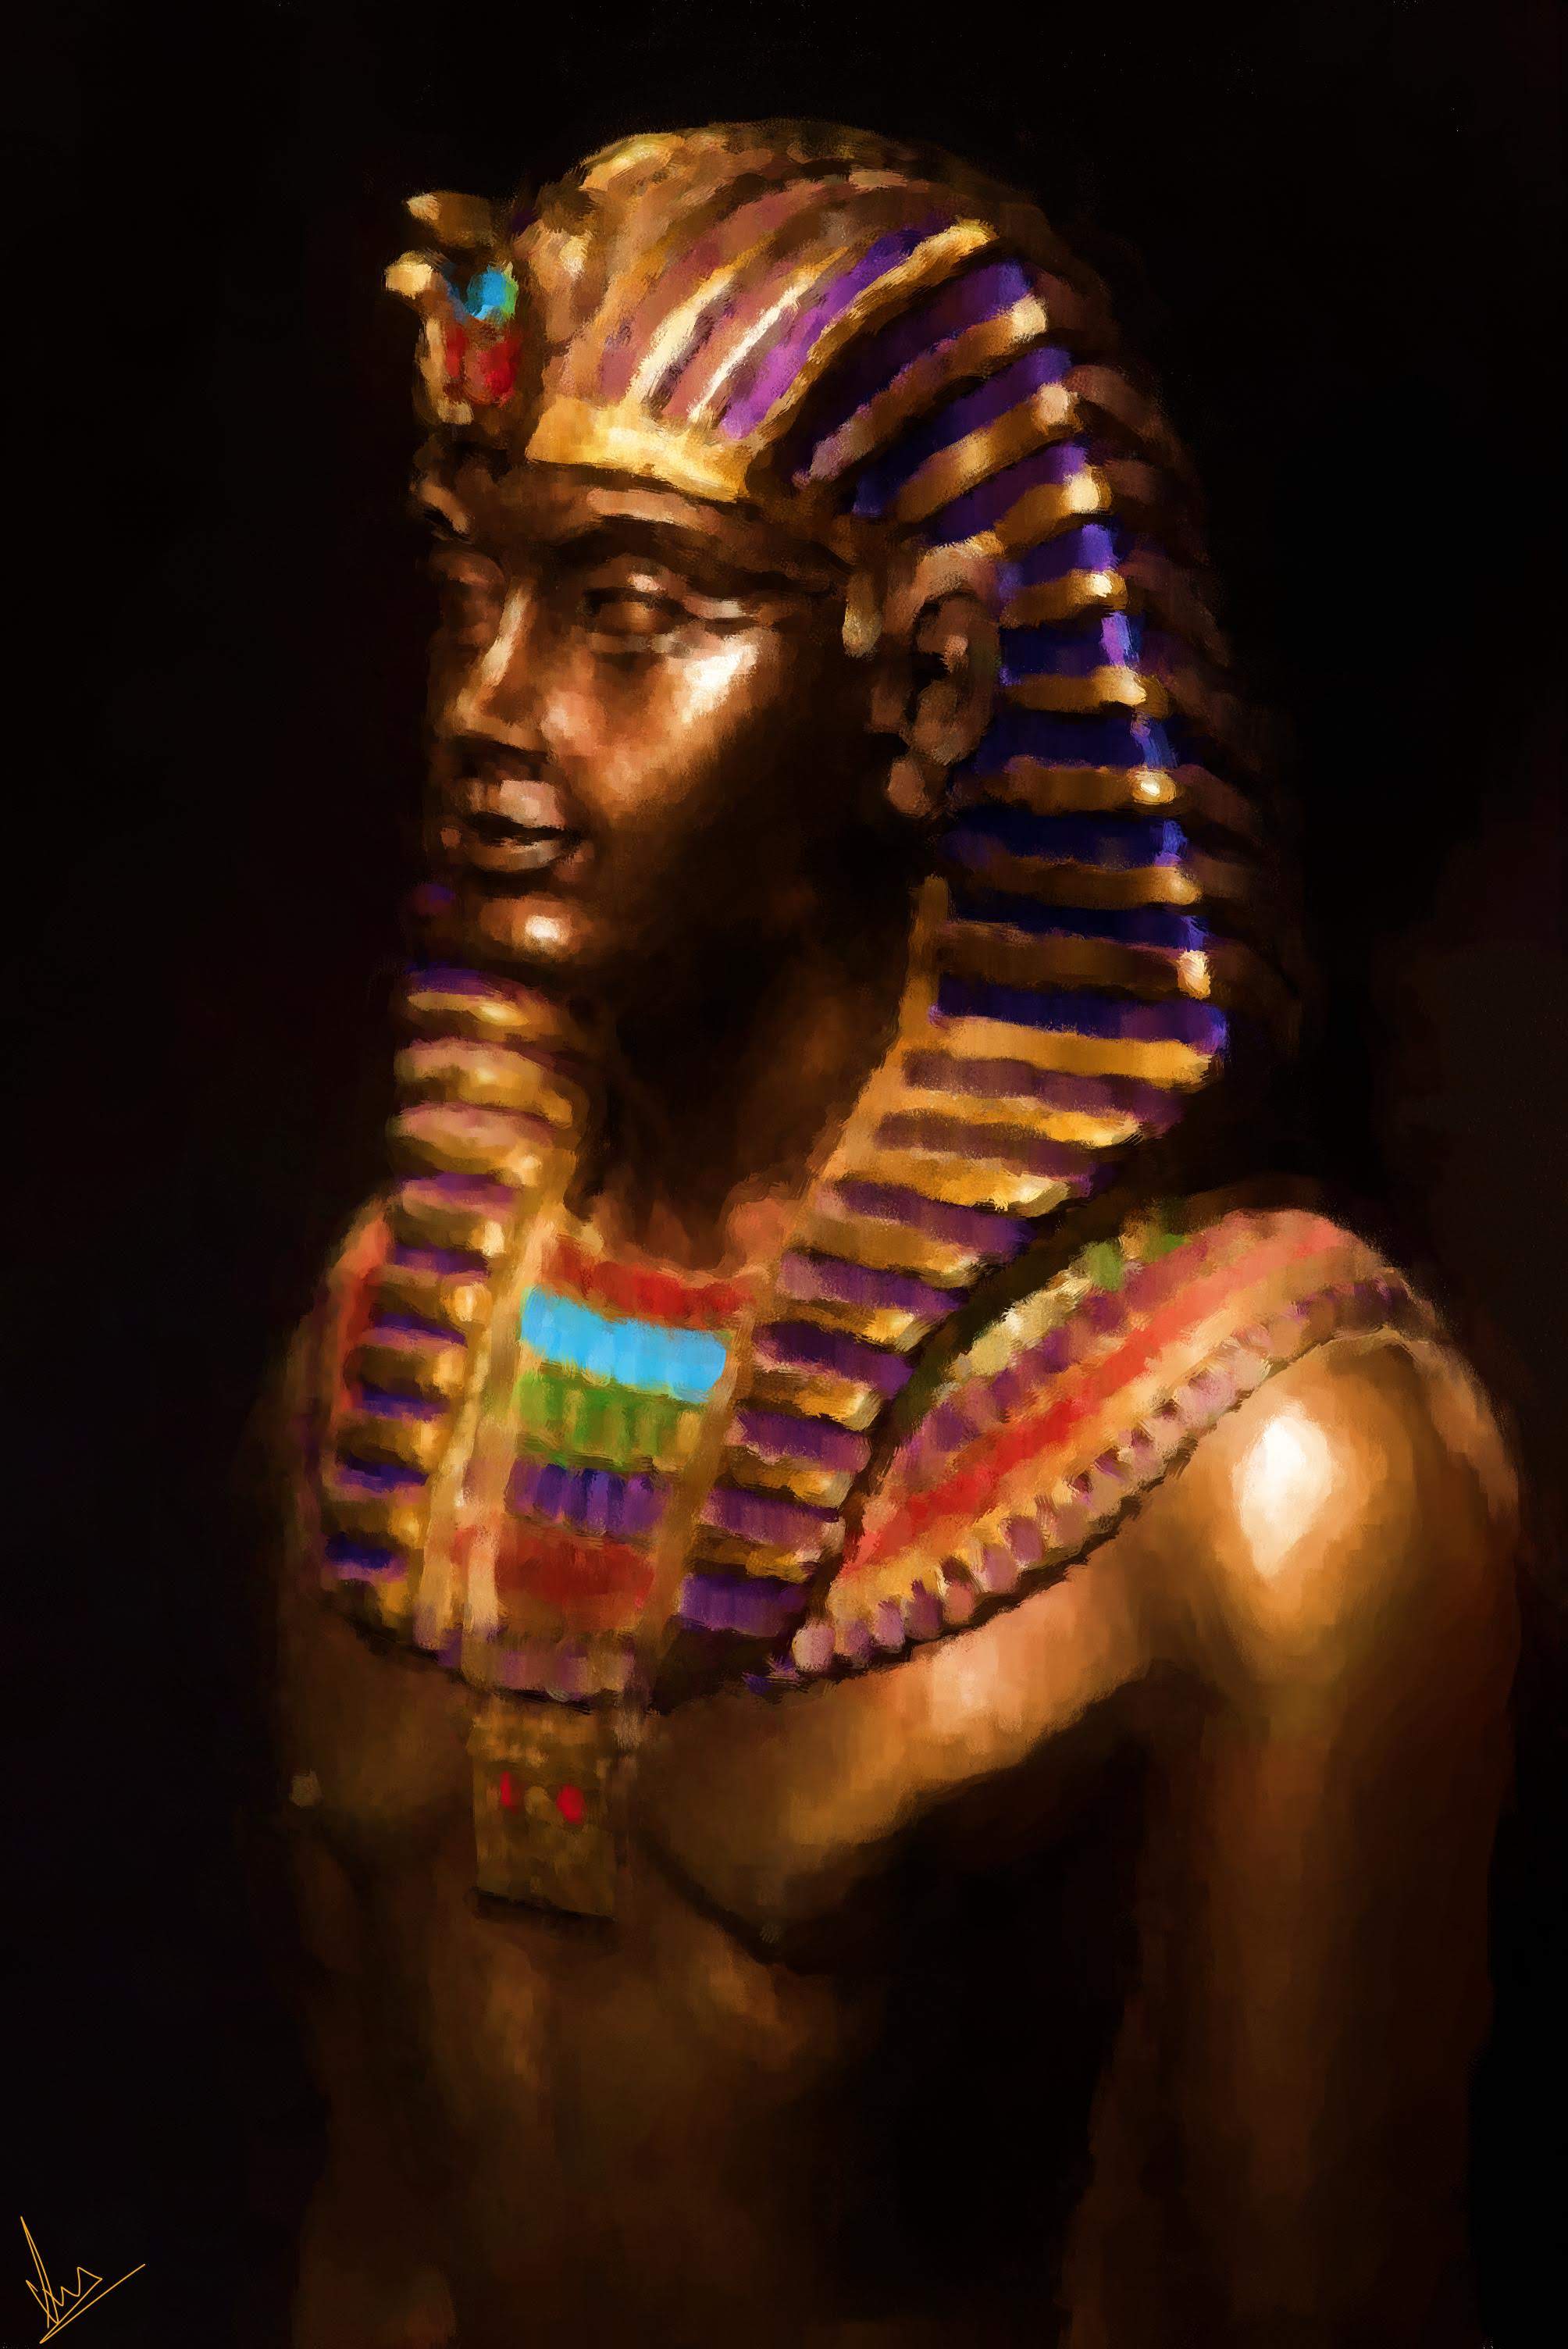 Egyptian Pharaoh